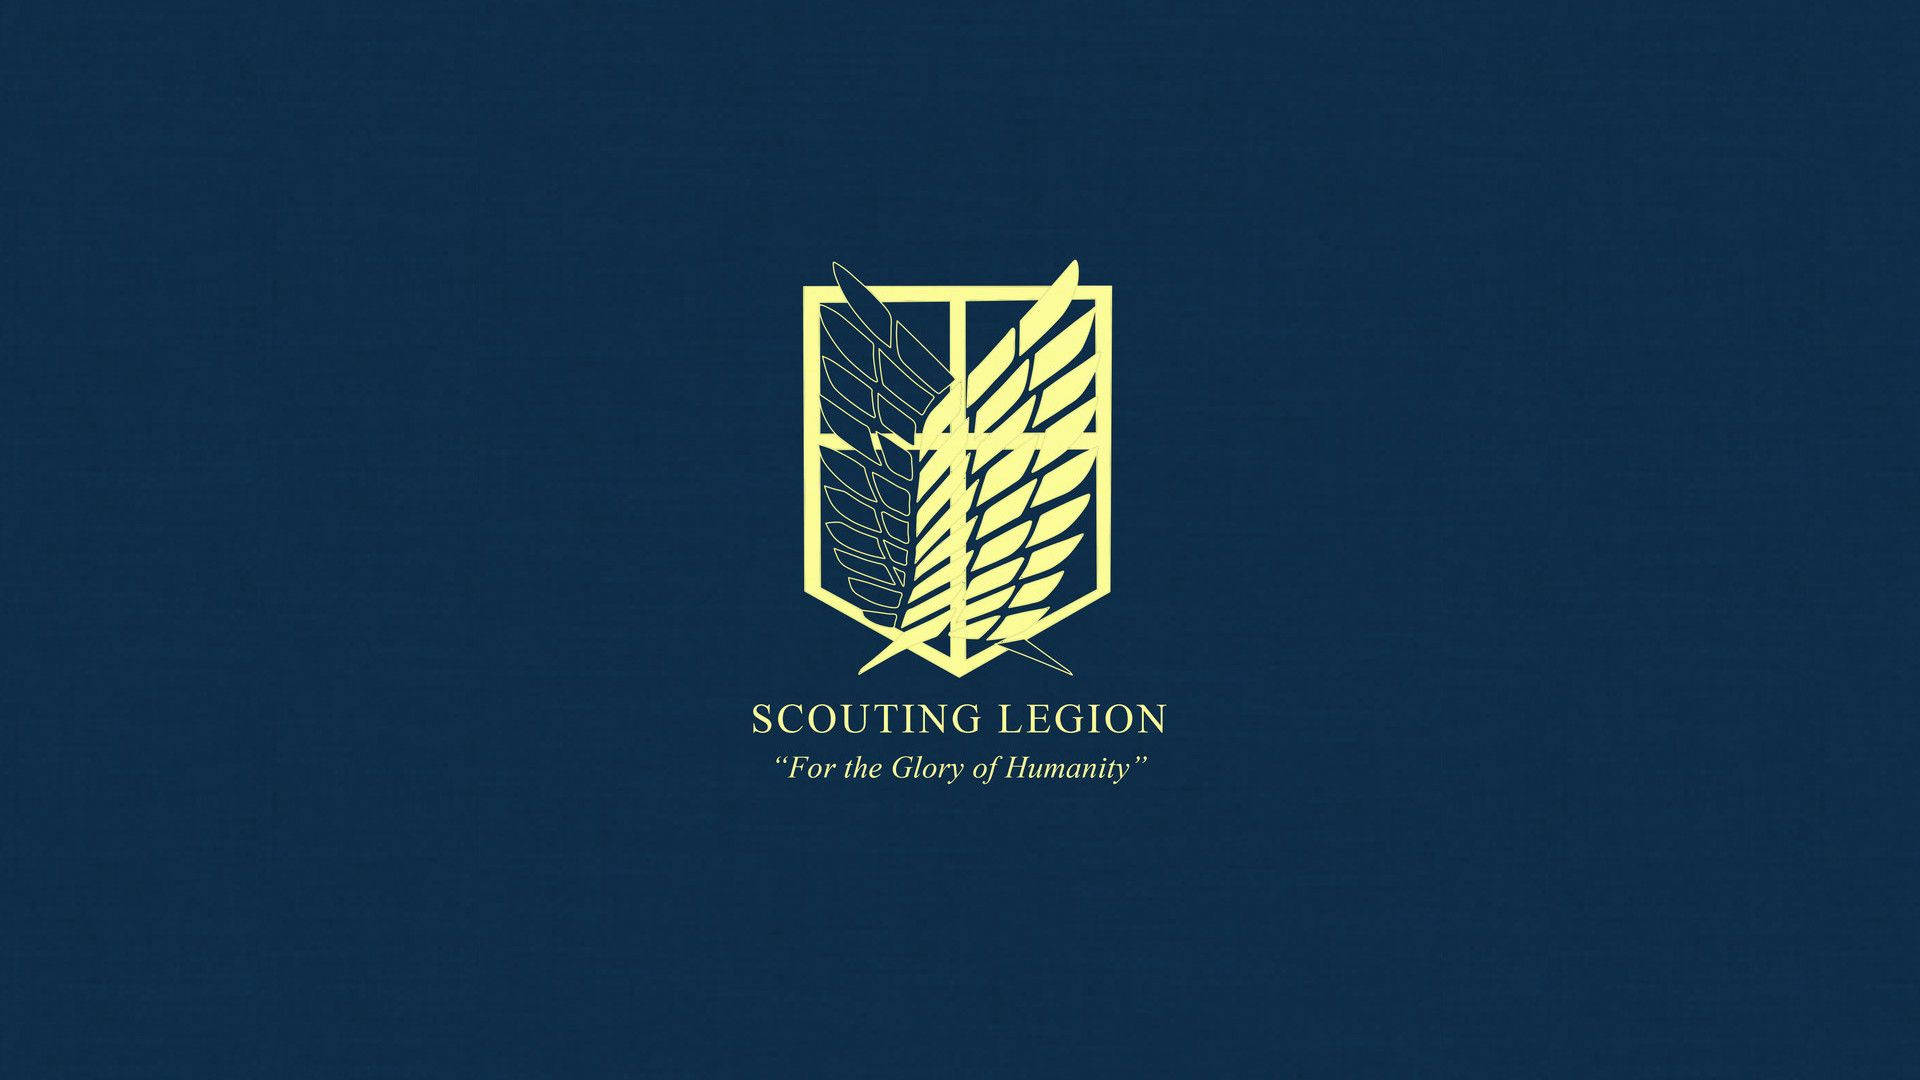 Scouting Legion Attack On Titan Logo Background